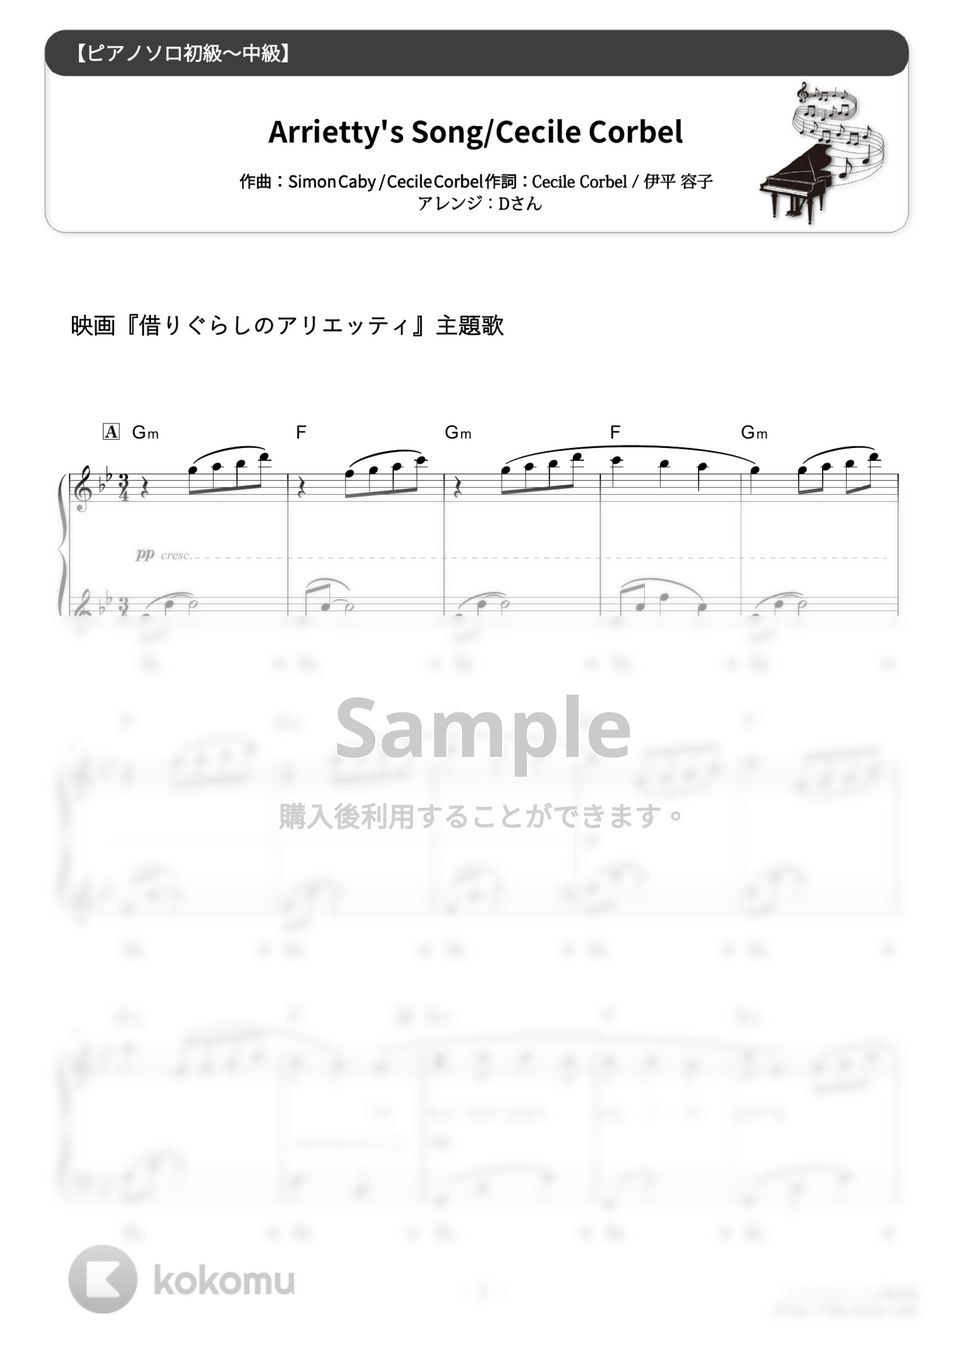 セシル・コルベル - Arrietty's Song (難易度:★★☆☆☆/歌詞・コード・ペダル付き) by Dさん